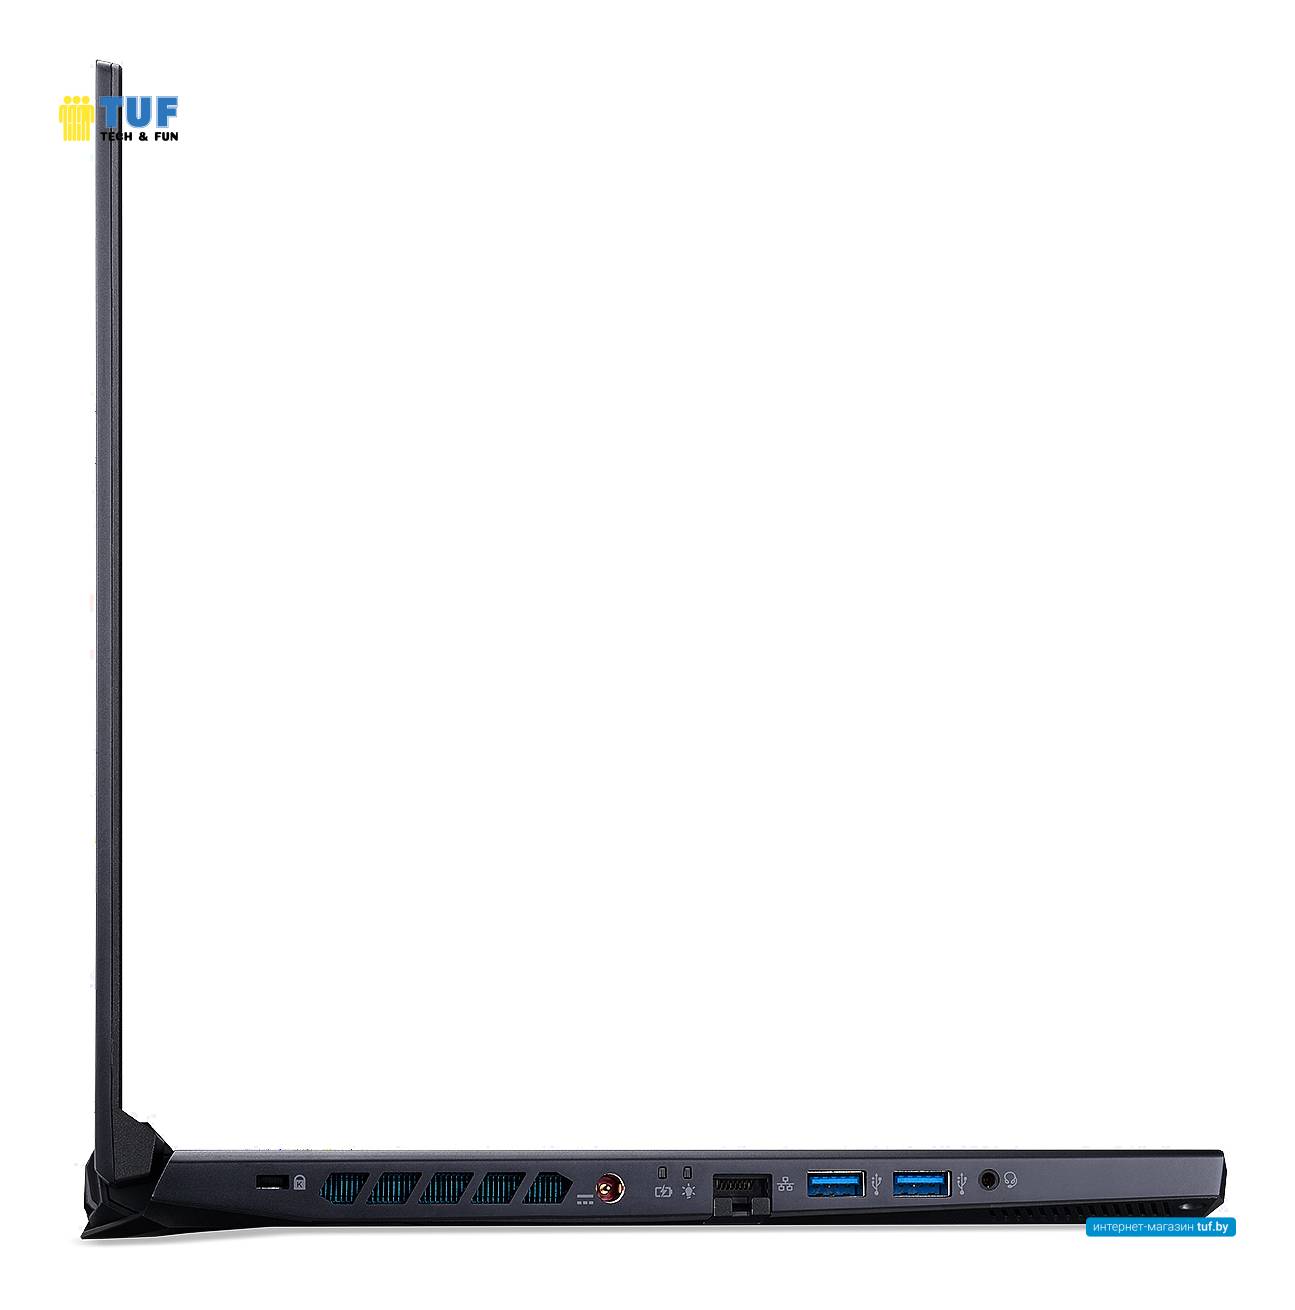 Ноутбук Acer Predator Helios 300 PH315-53-537W NH.Q7XER.00D